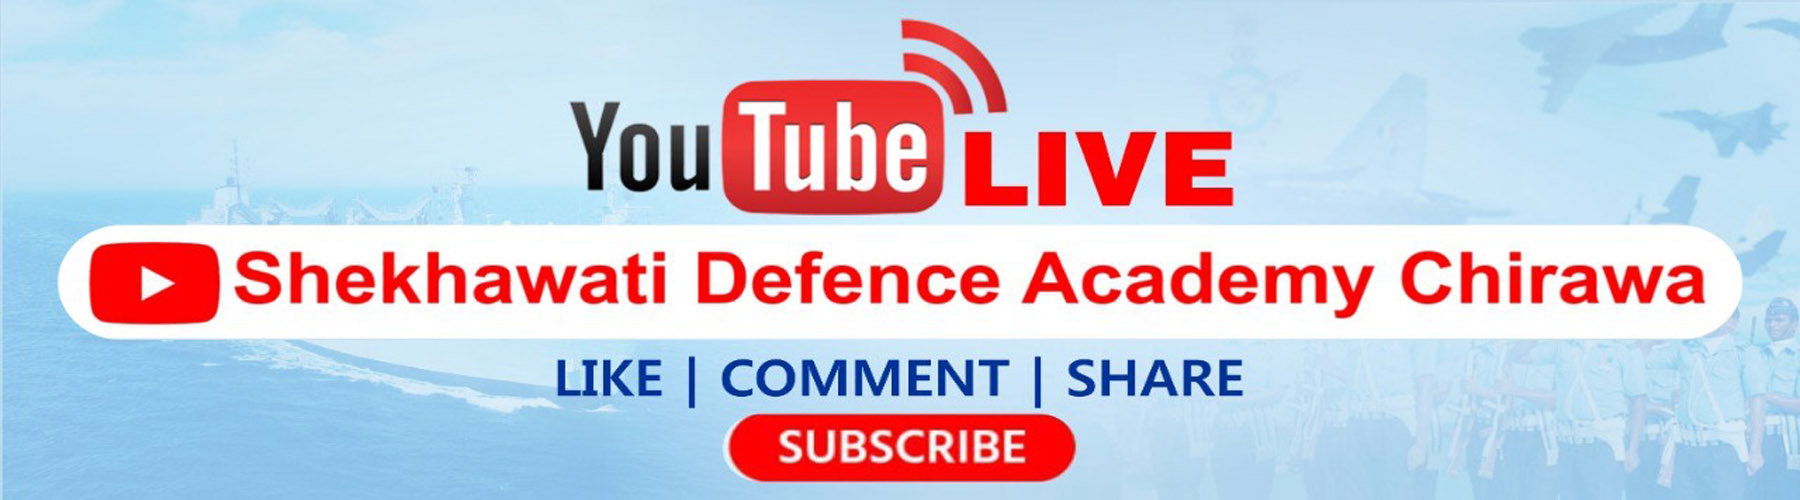 Shekhawati Defence Academy